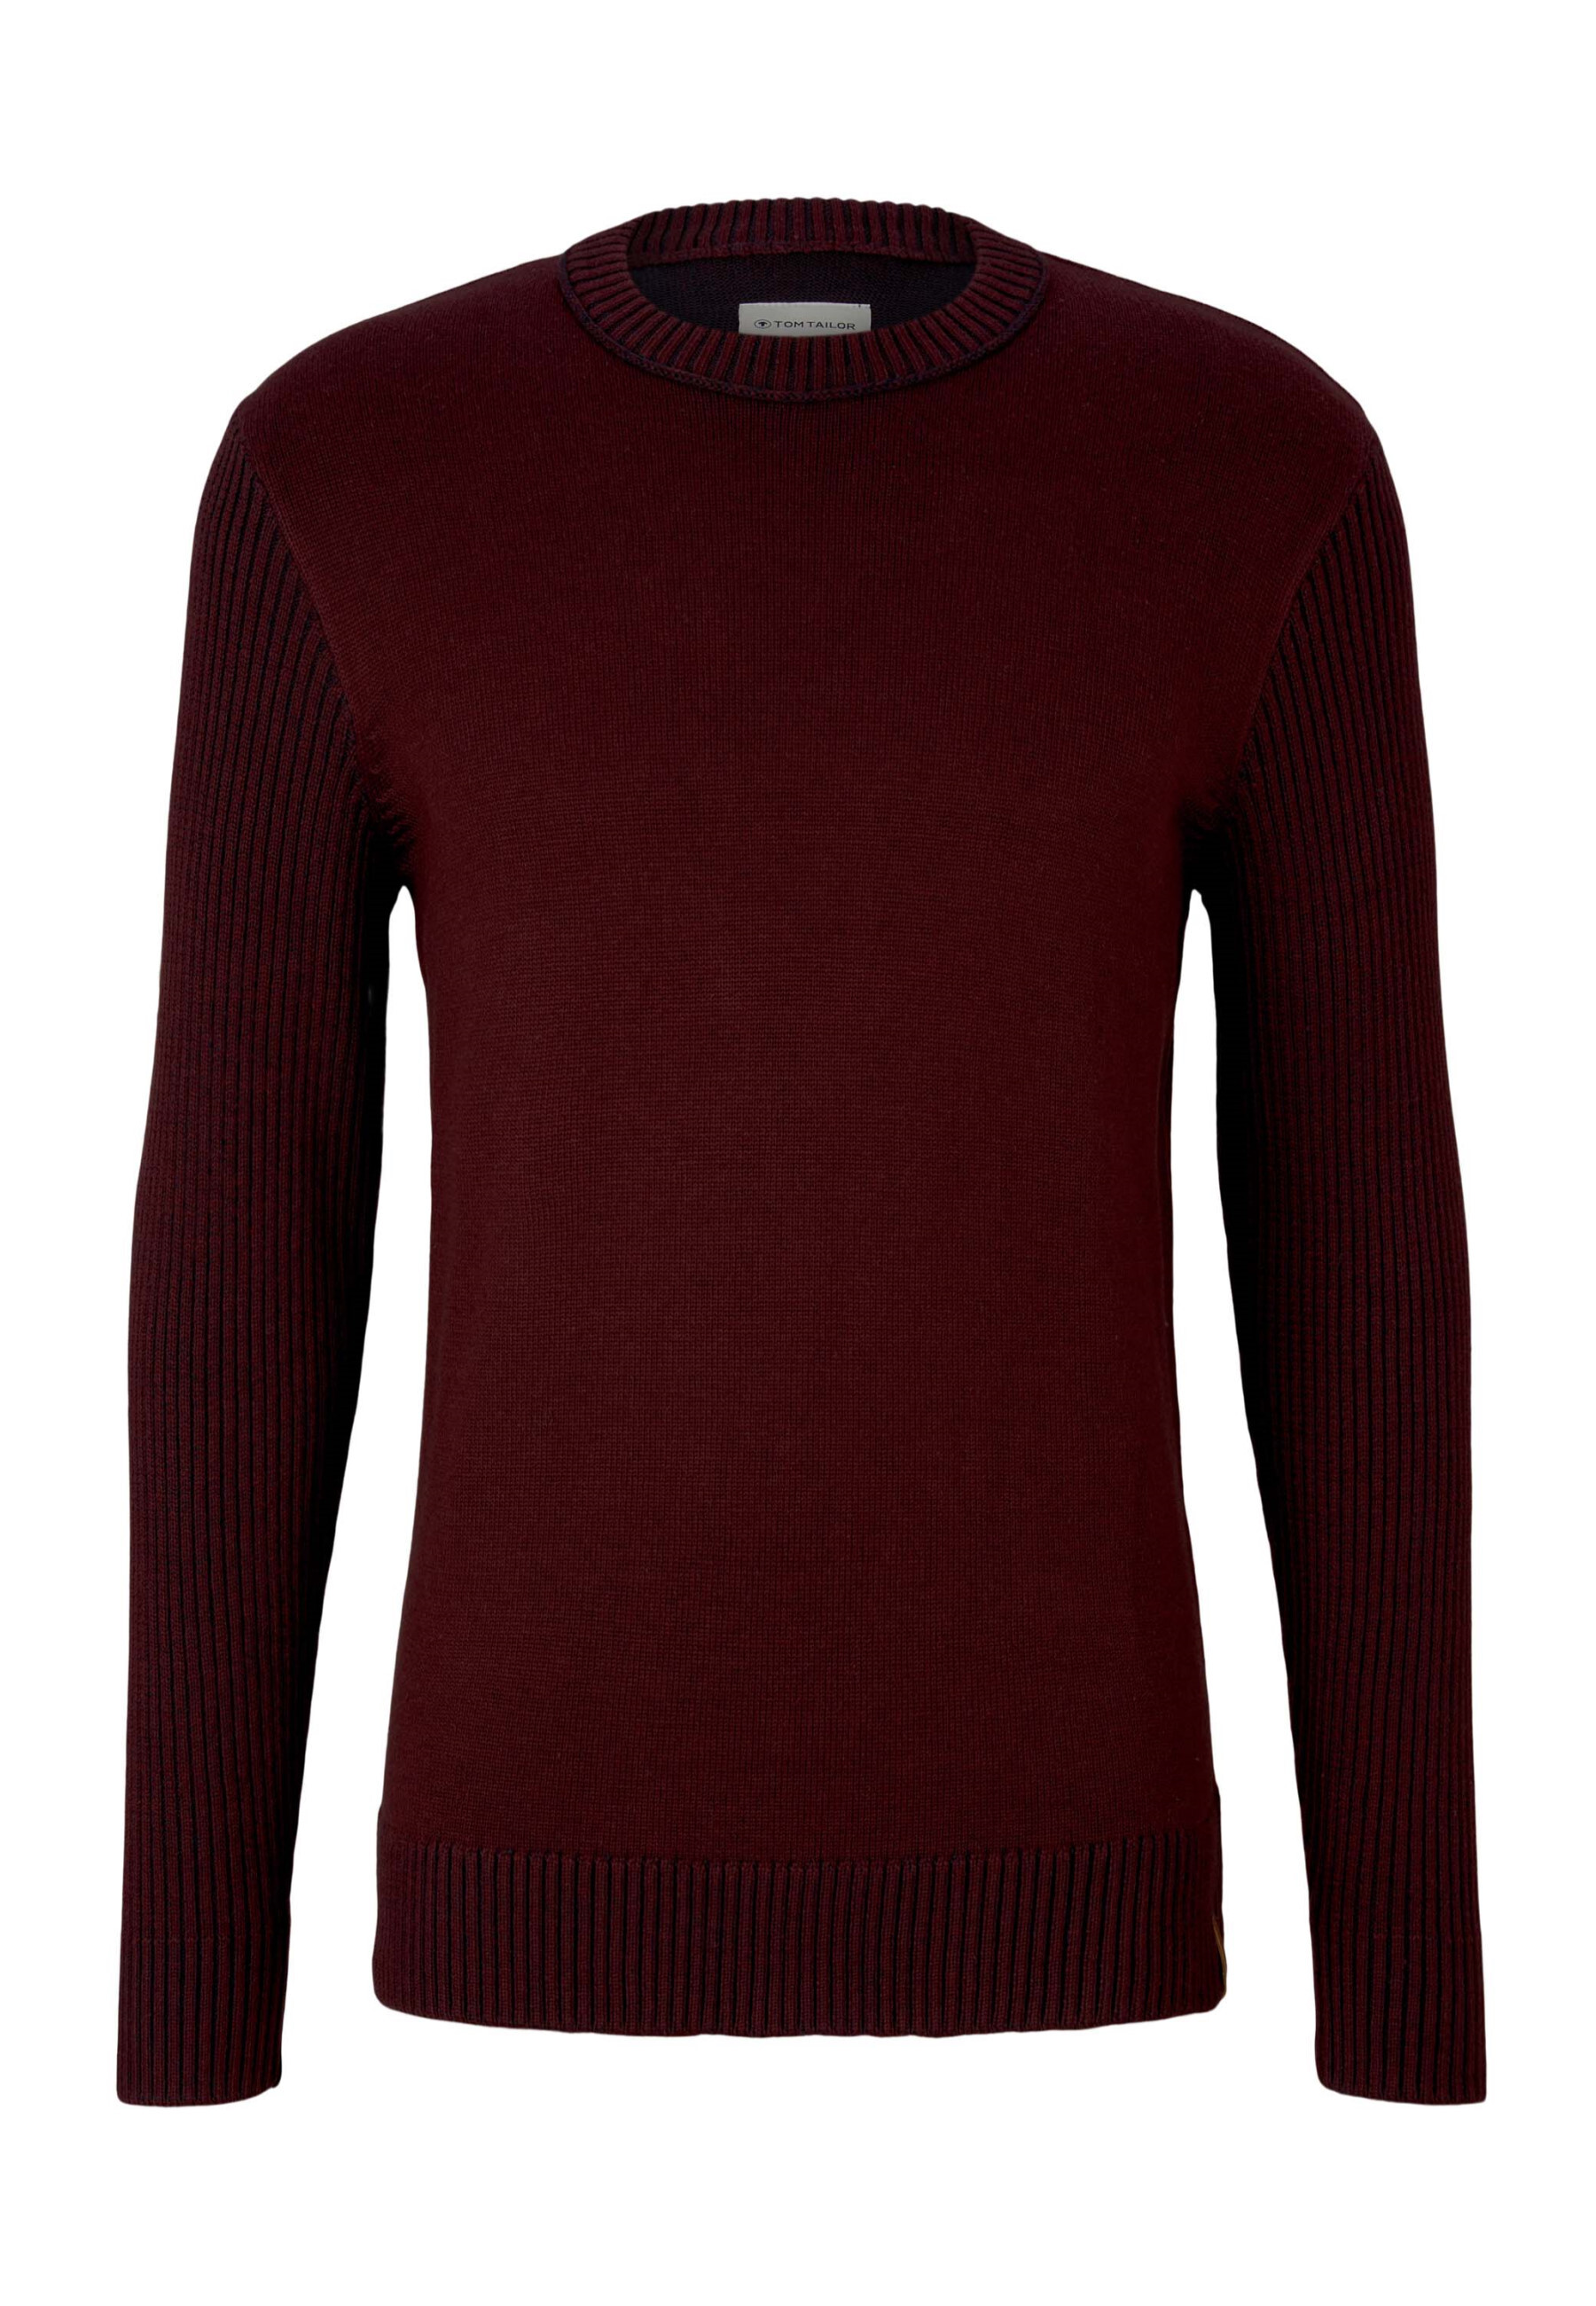 Пуловер Tom Tailor Strick, красный пуловер tom tailor strick красный